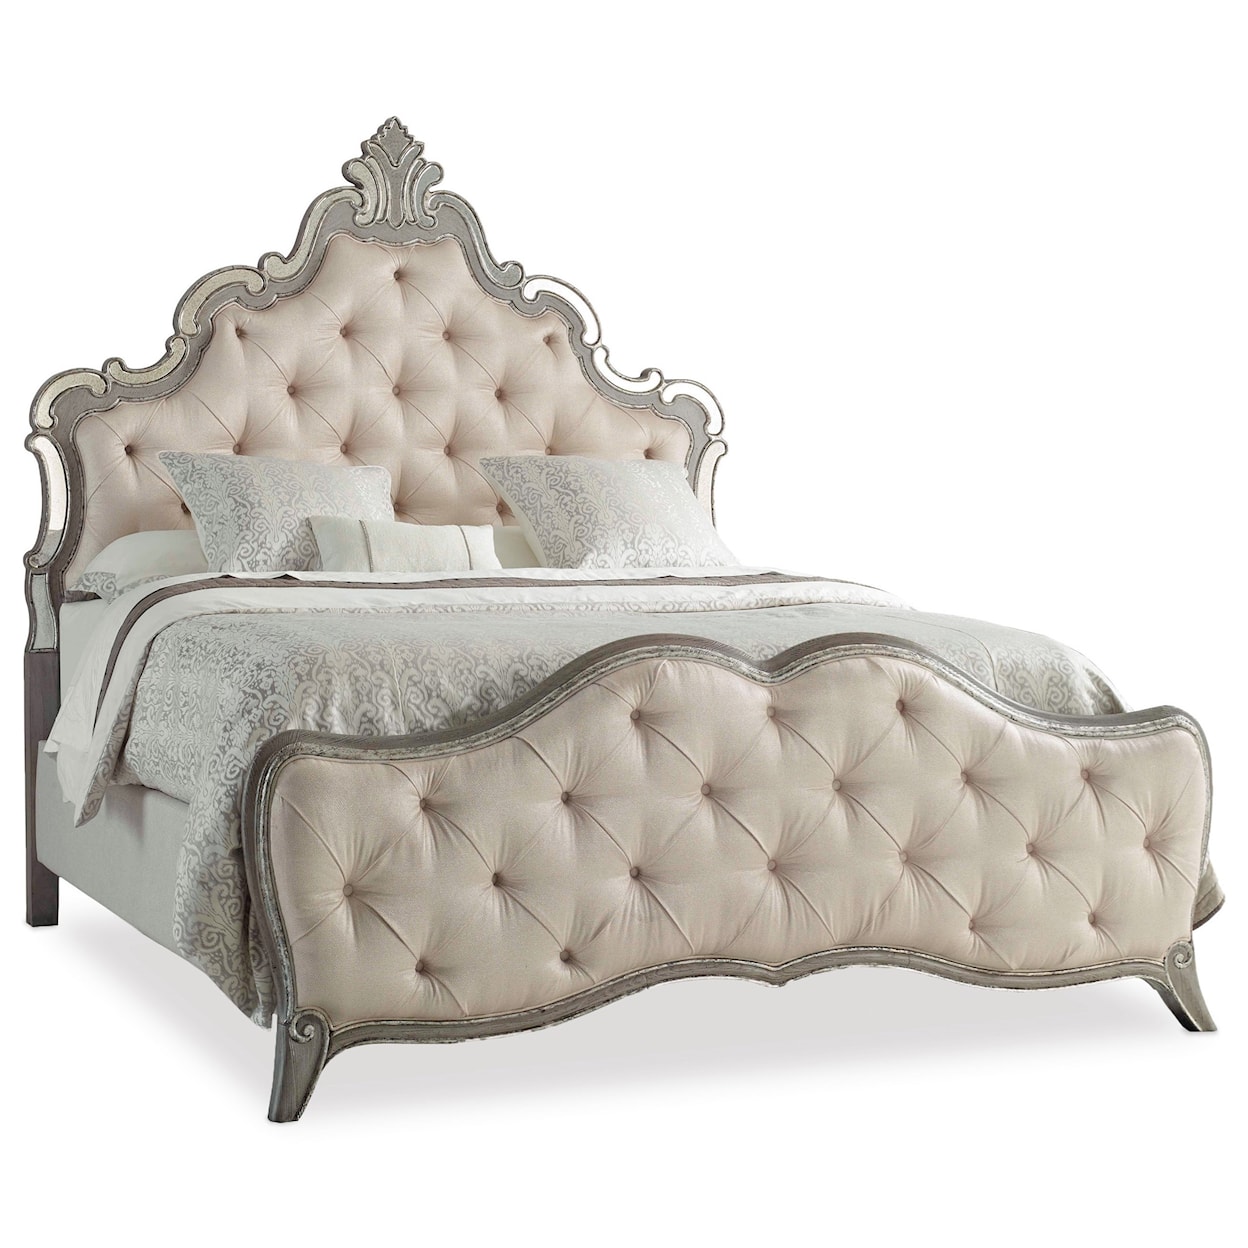 Hooker Furniture Sanctuary Upholstered King Panel Bed